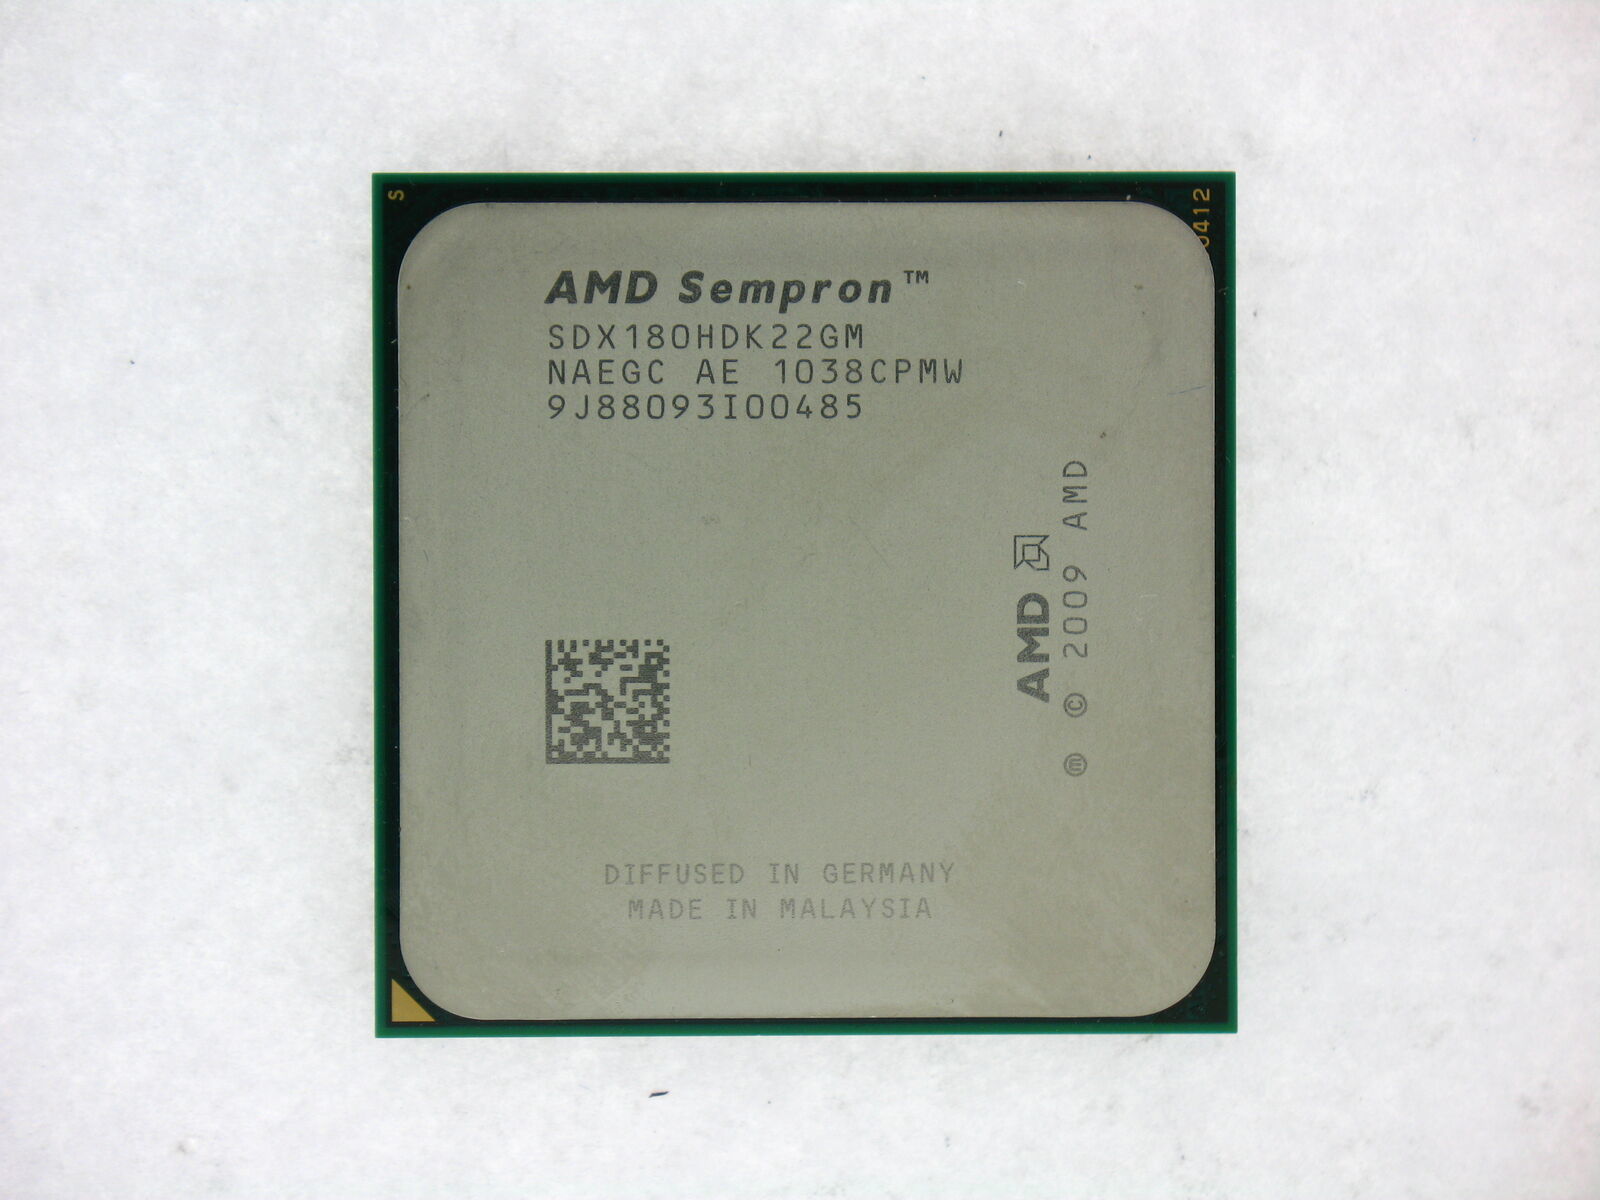 Genuine AMD Sempron 180 2.4GHZ Dual-Core (SDX180HDK22GM) Processor CPU-
show ... - $35.45